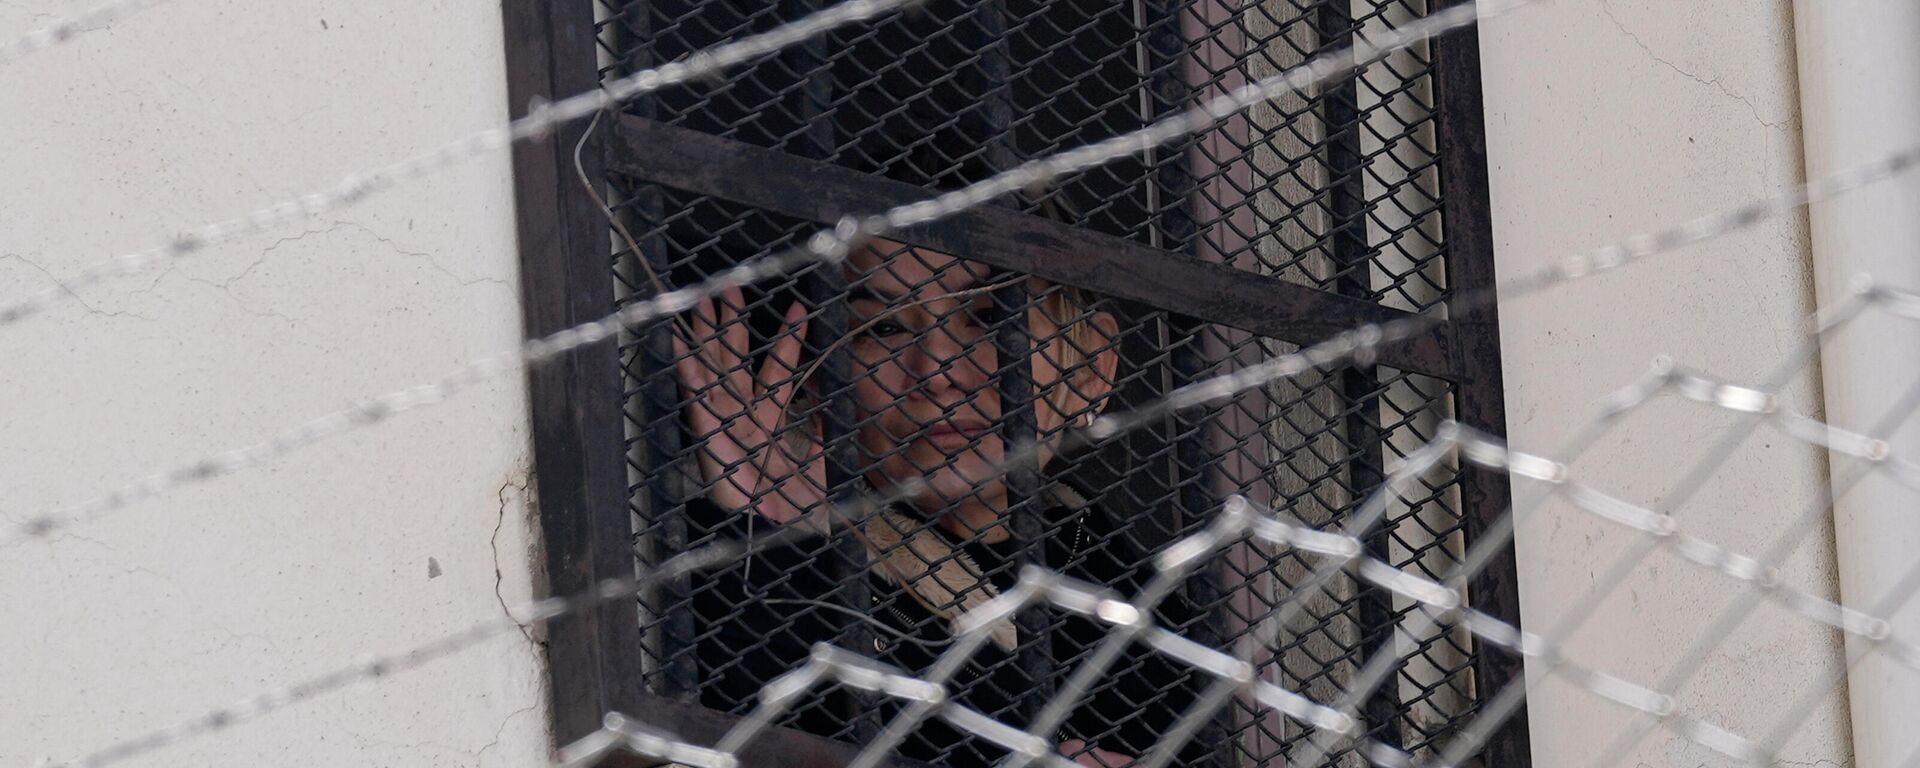 La expresidenta transitoria boliviana, Jeanine Áñez (2019-2020), en la cárcel - Sputnik Mundo, 1920, 13.06.2022